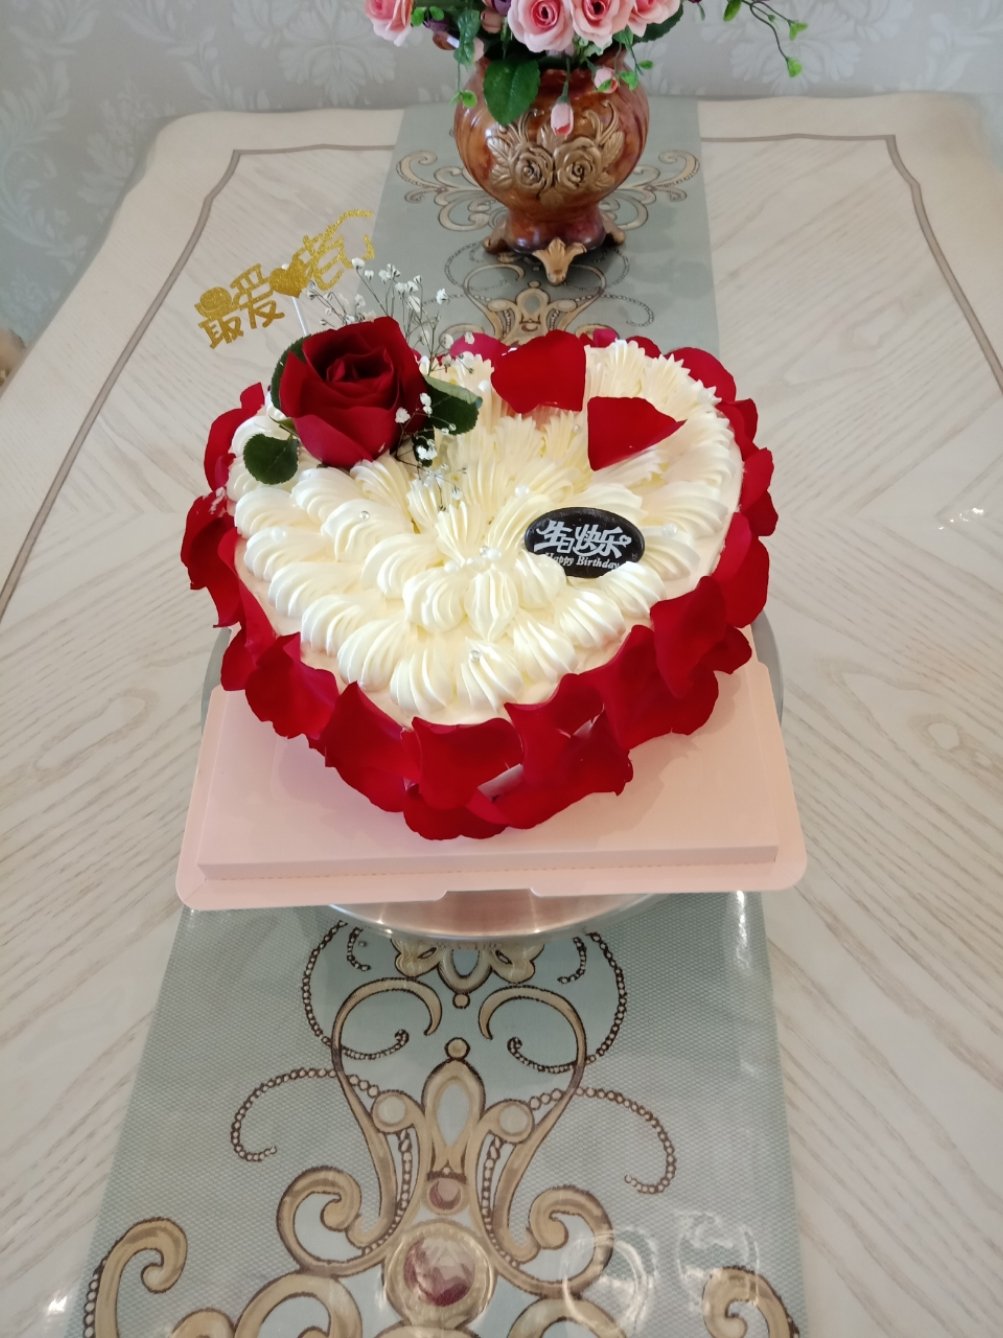 爱尚烘焙工作室做的玫瑰花蛋糕